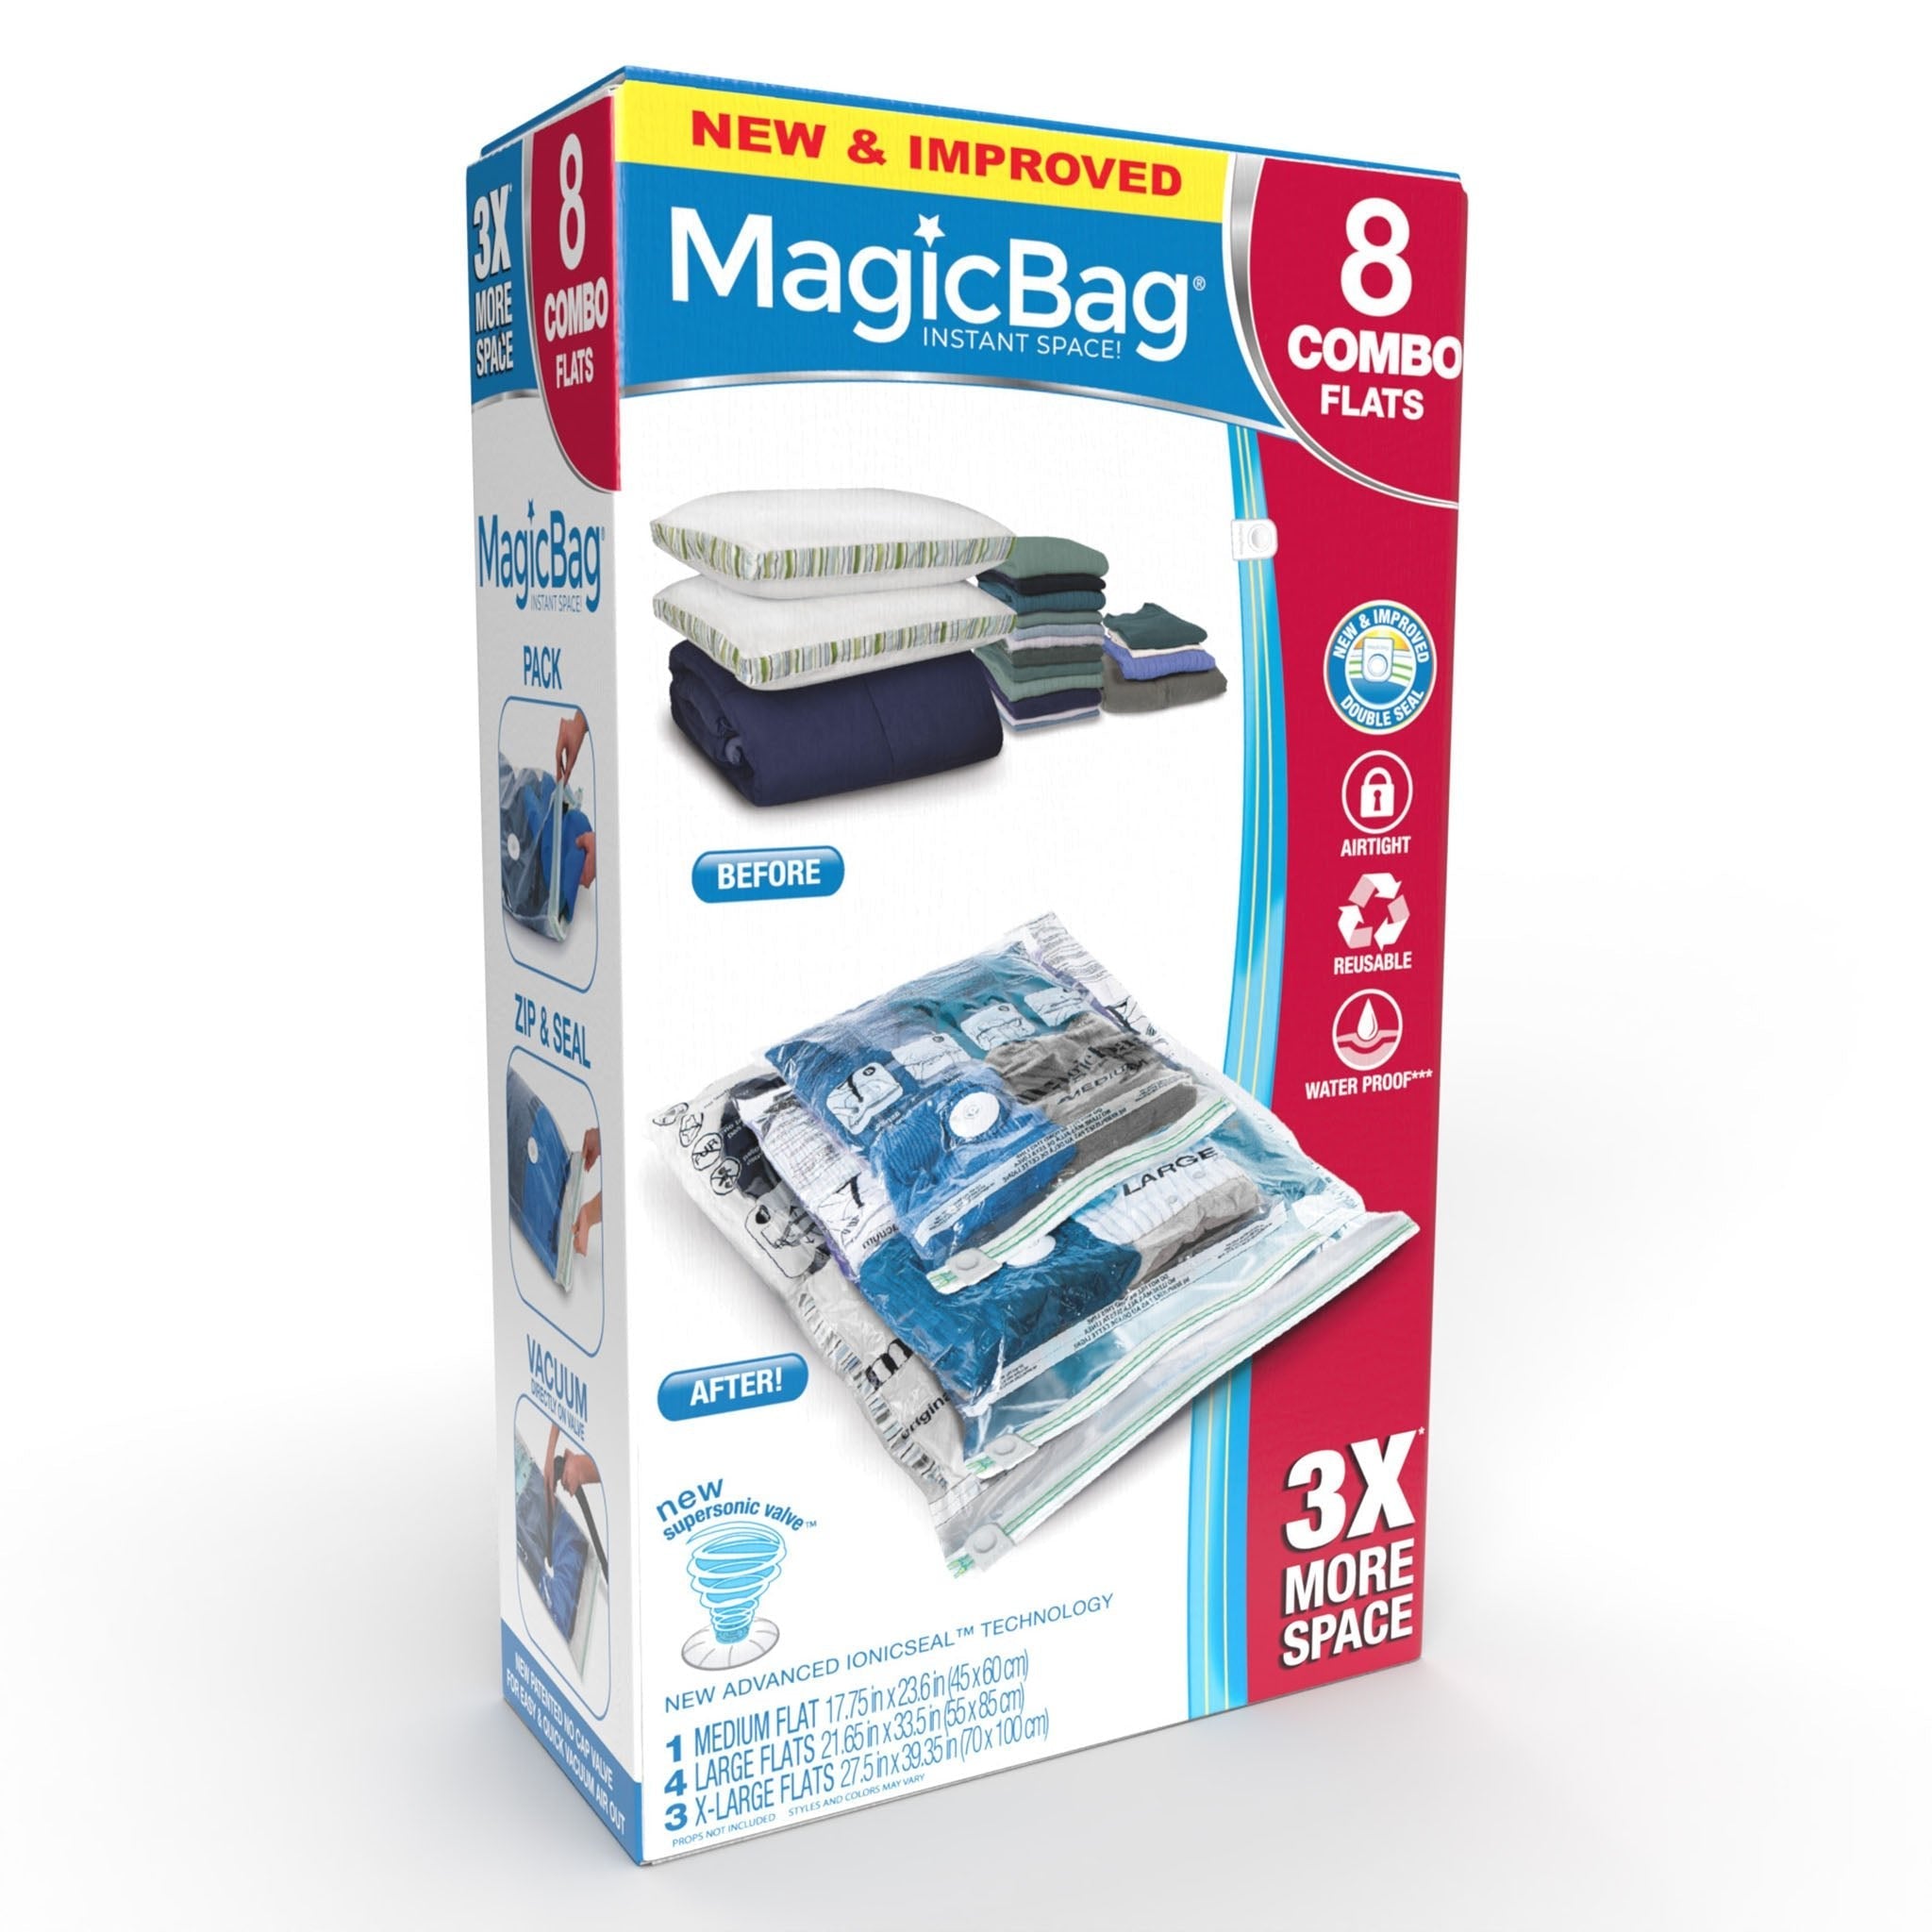 http://www.shopsmartdesign.com/cdn/shop/products/magicbag-instant-space-saver-storage-combo-flat-smart-design-magicbag-5765412-200-incrementing-number-420172.jpg?v=1679340752